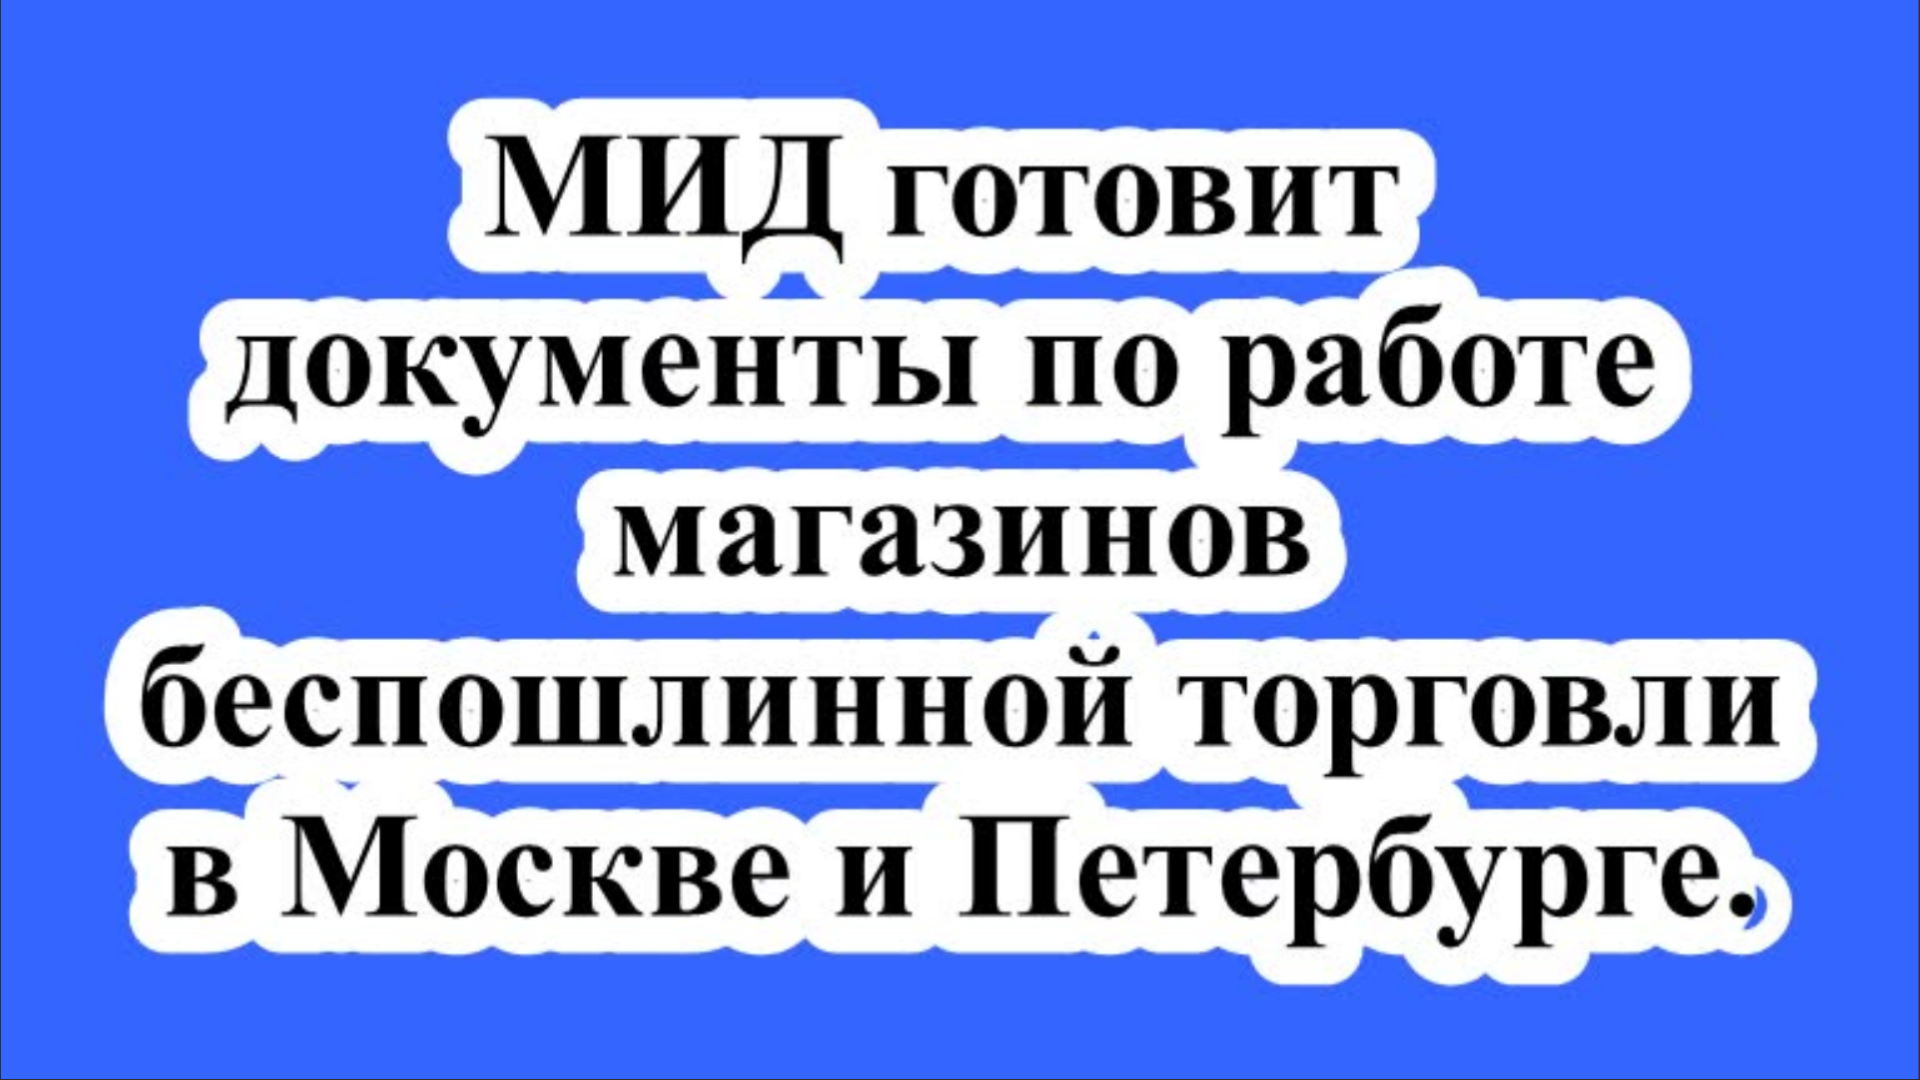 МИД готовит документы по работе магазинов беспошлинной торговли в Москве и Петербурге.